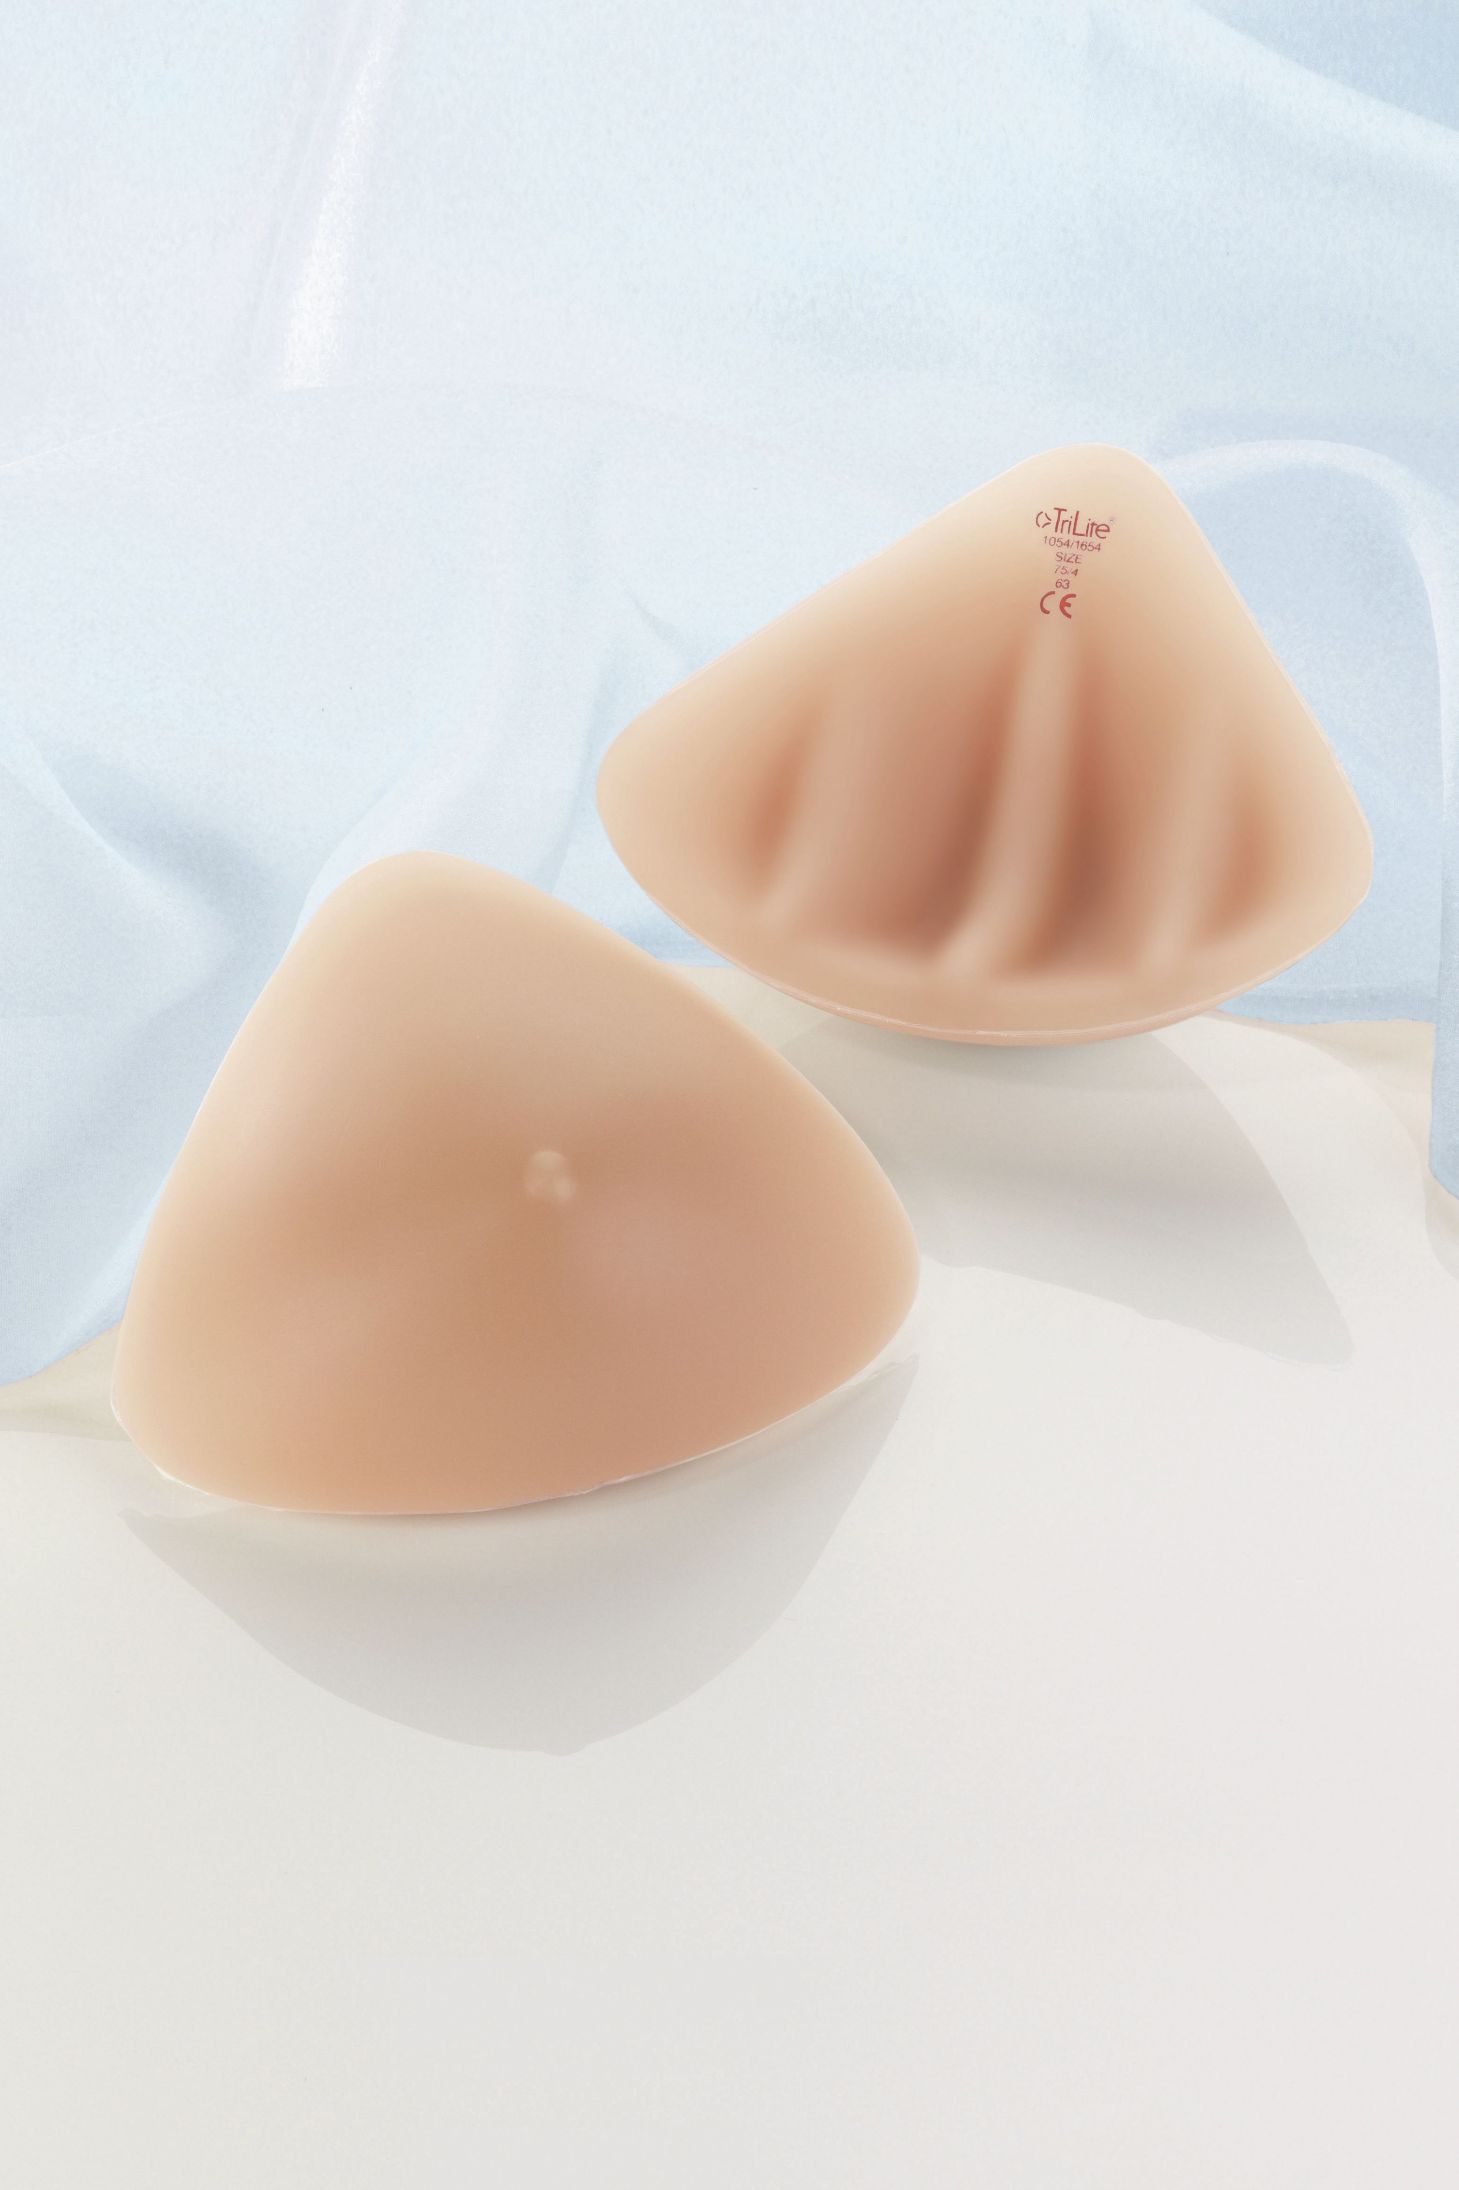 Proteză de sân uşoară din silicon, simetrică cu striaţiuni speciale ANITA Care Active